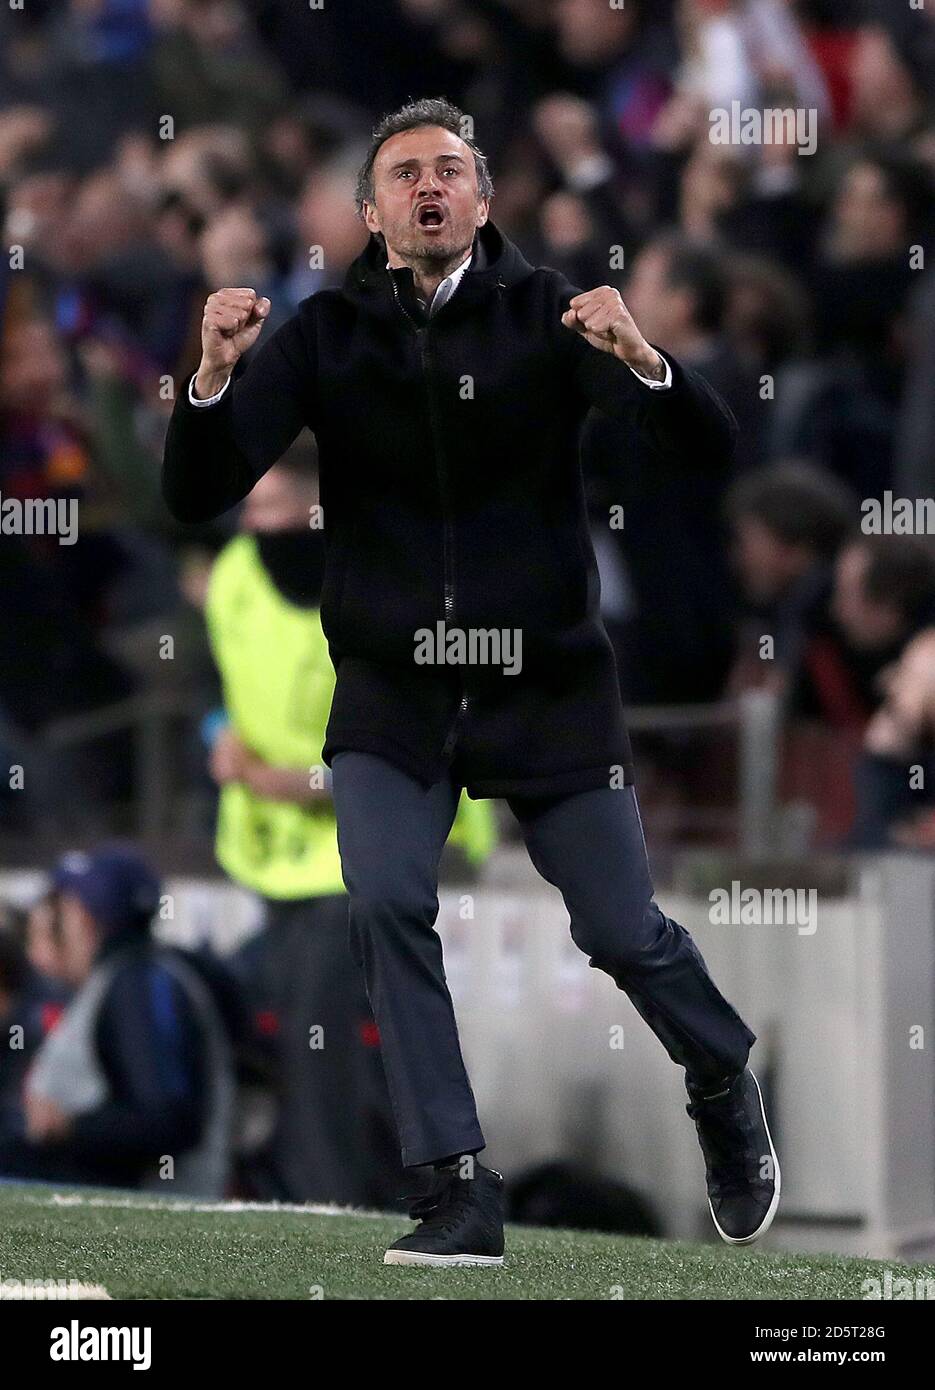 Barcelona's manager Luis Enrique celebrates after Paris Saint-Germain's ...